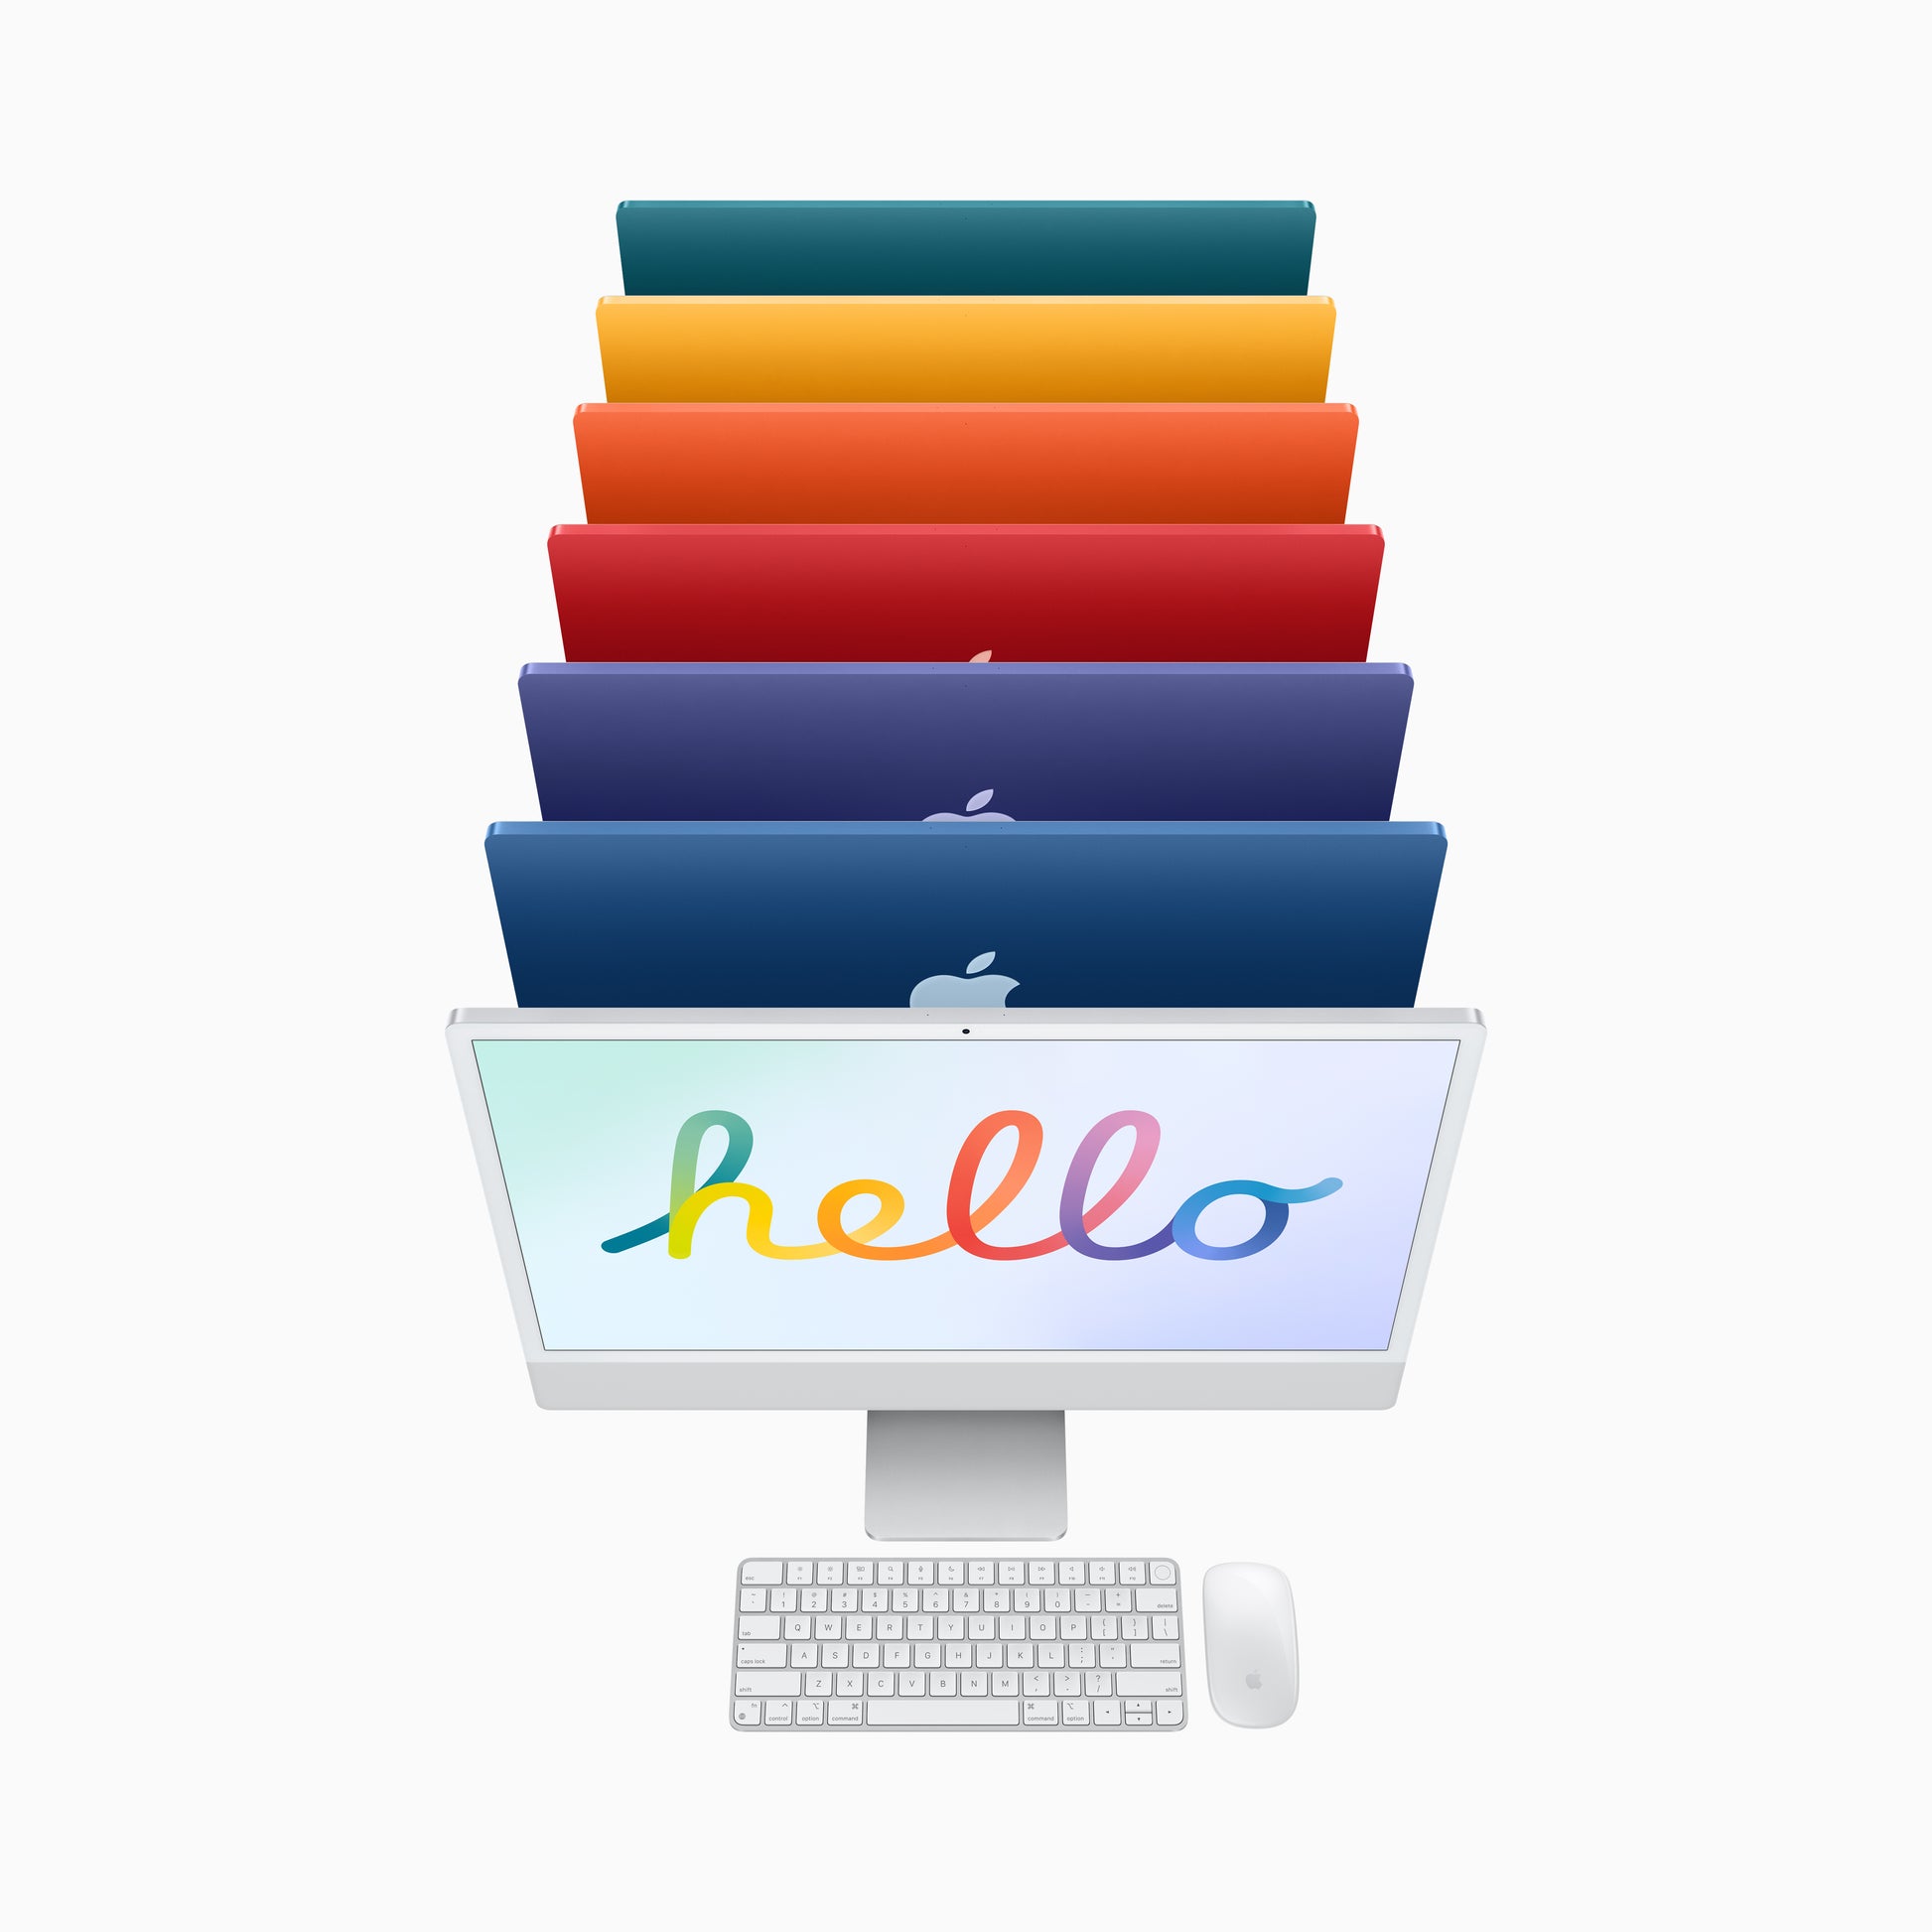 Apple iMac 24-inch | M1 | 8-core CPU | 8-core GPU | Purple